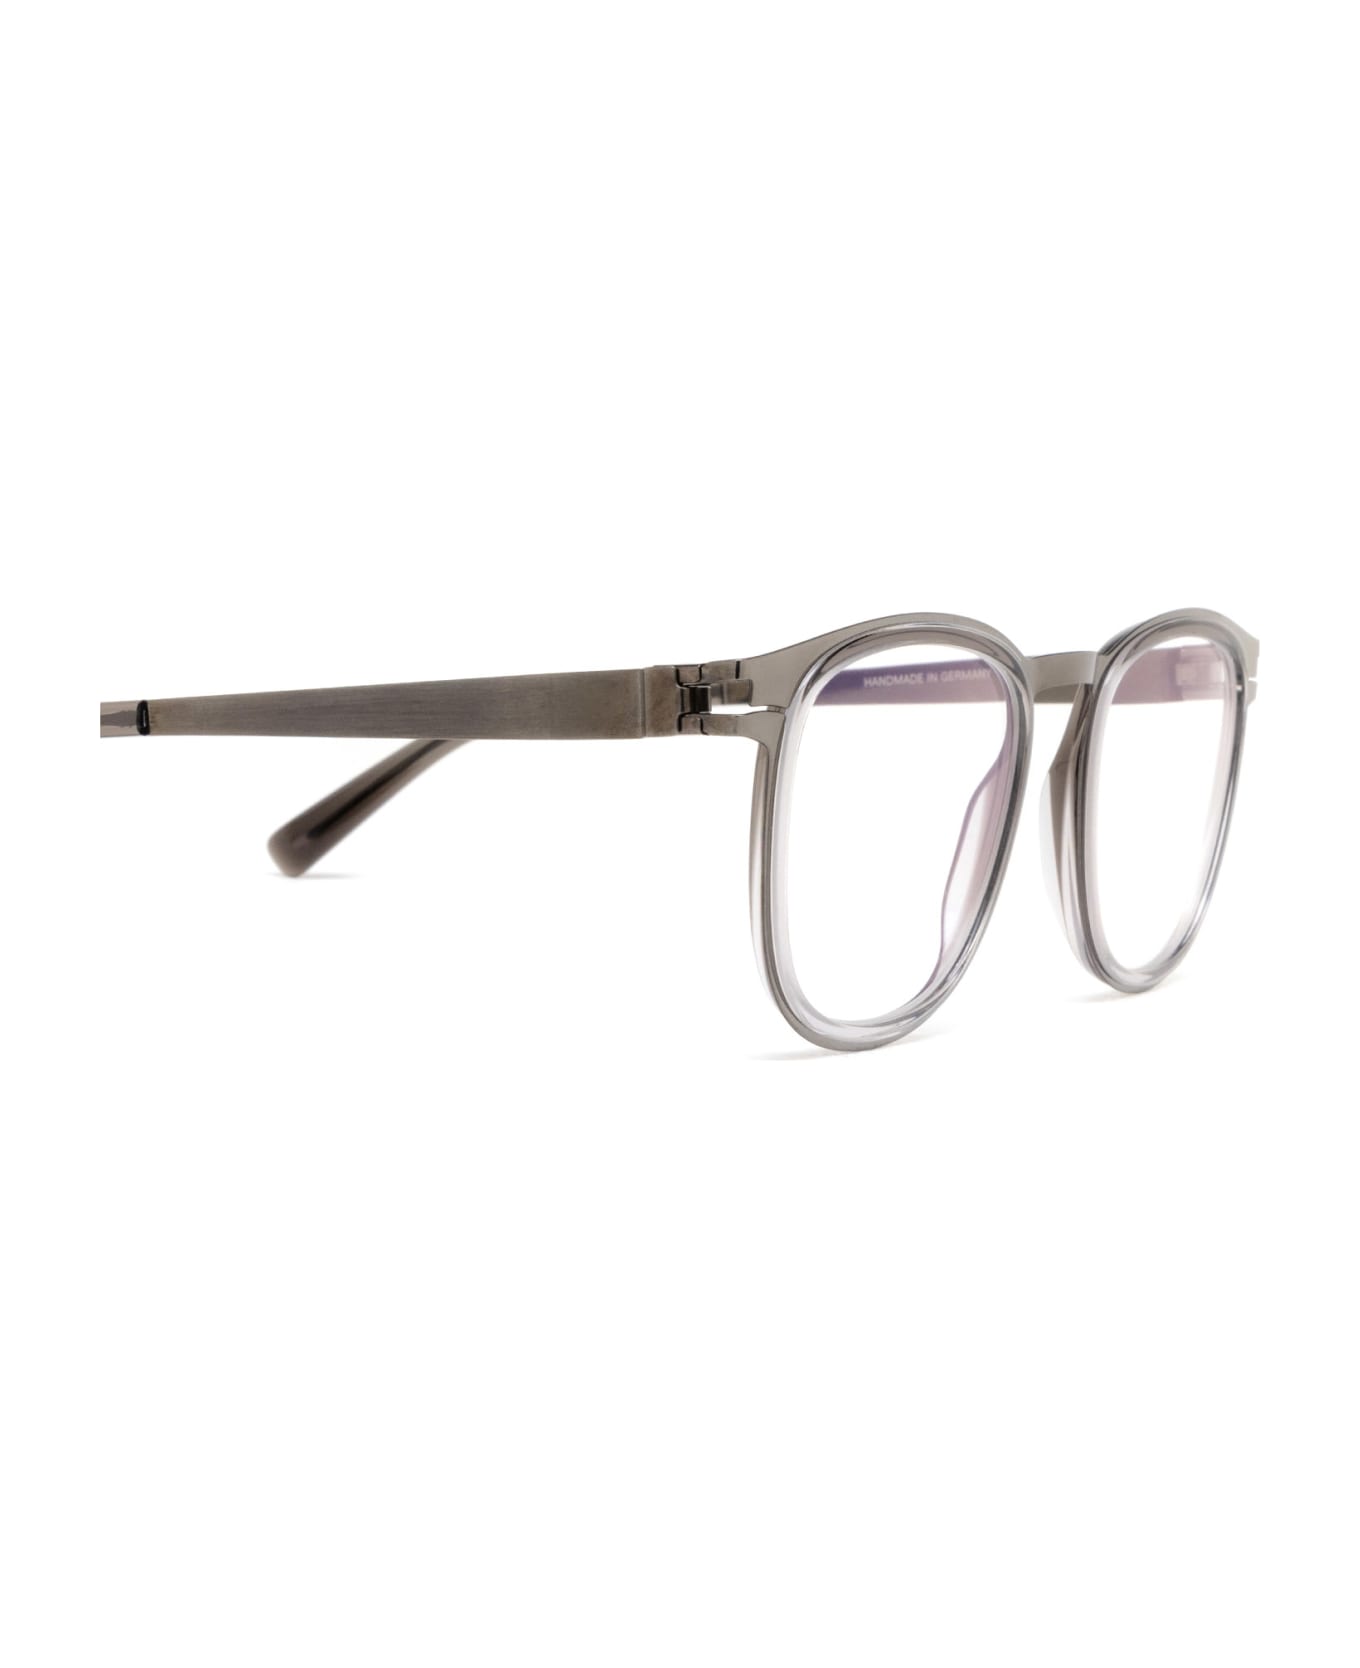 Mykita Cantara A54 Shiny Graphite/grey Gradie Glasses - A54 Shiny Graphite/Grey Gradie